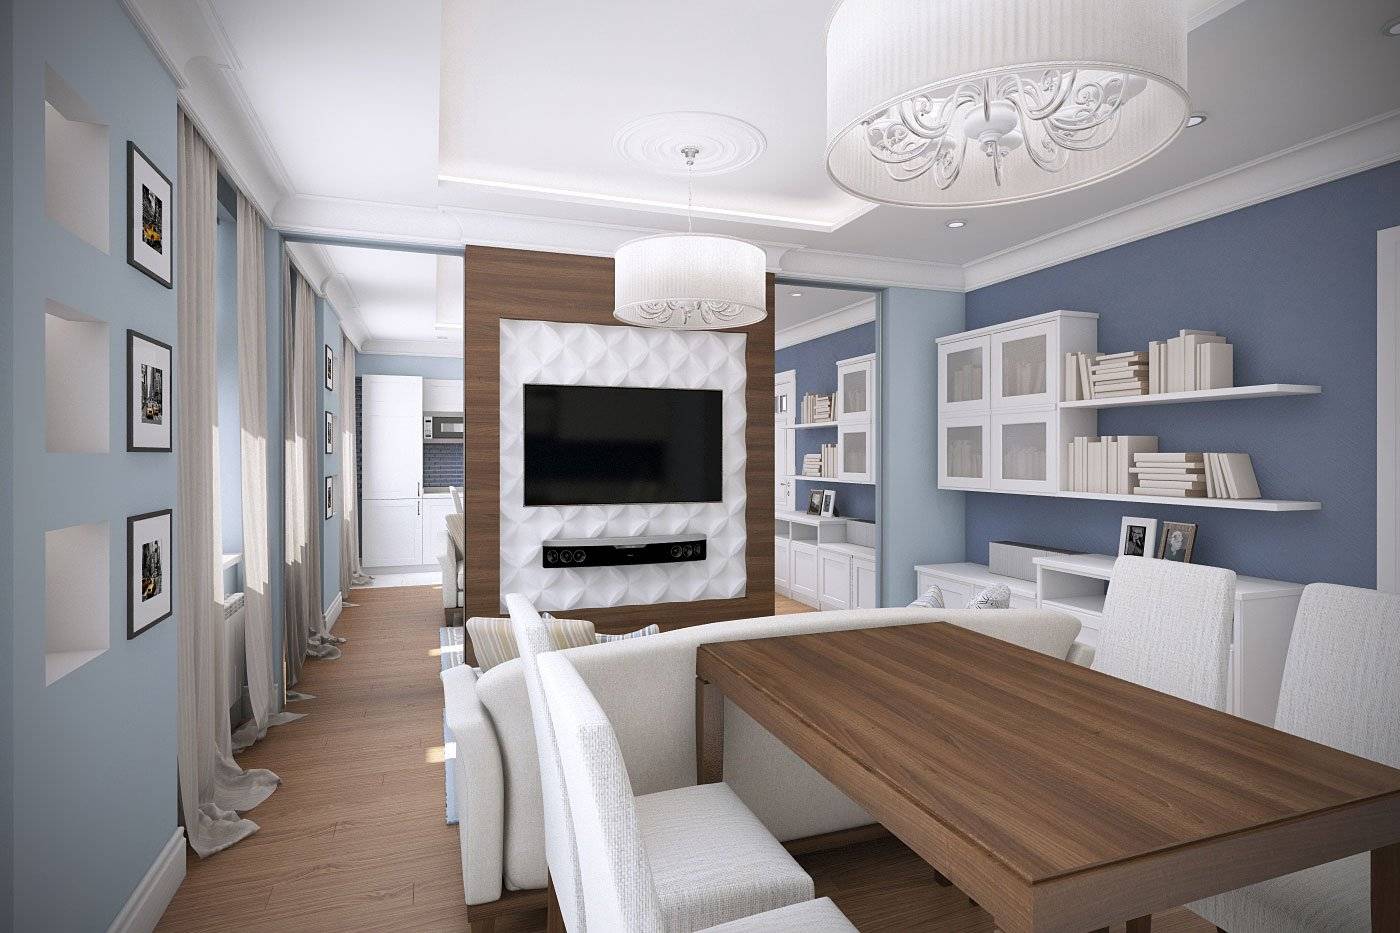 Дизайн кухни-гостиной 20 кв. м: как зонировать и оформить помещение?